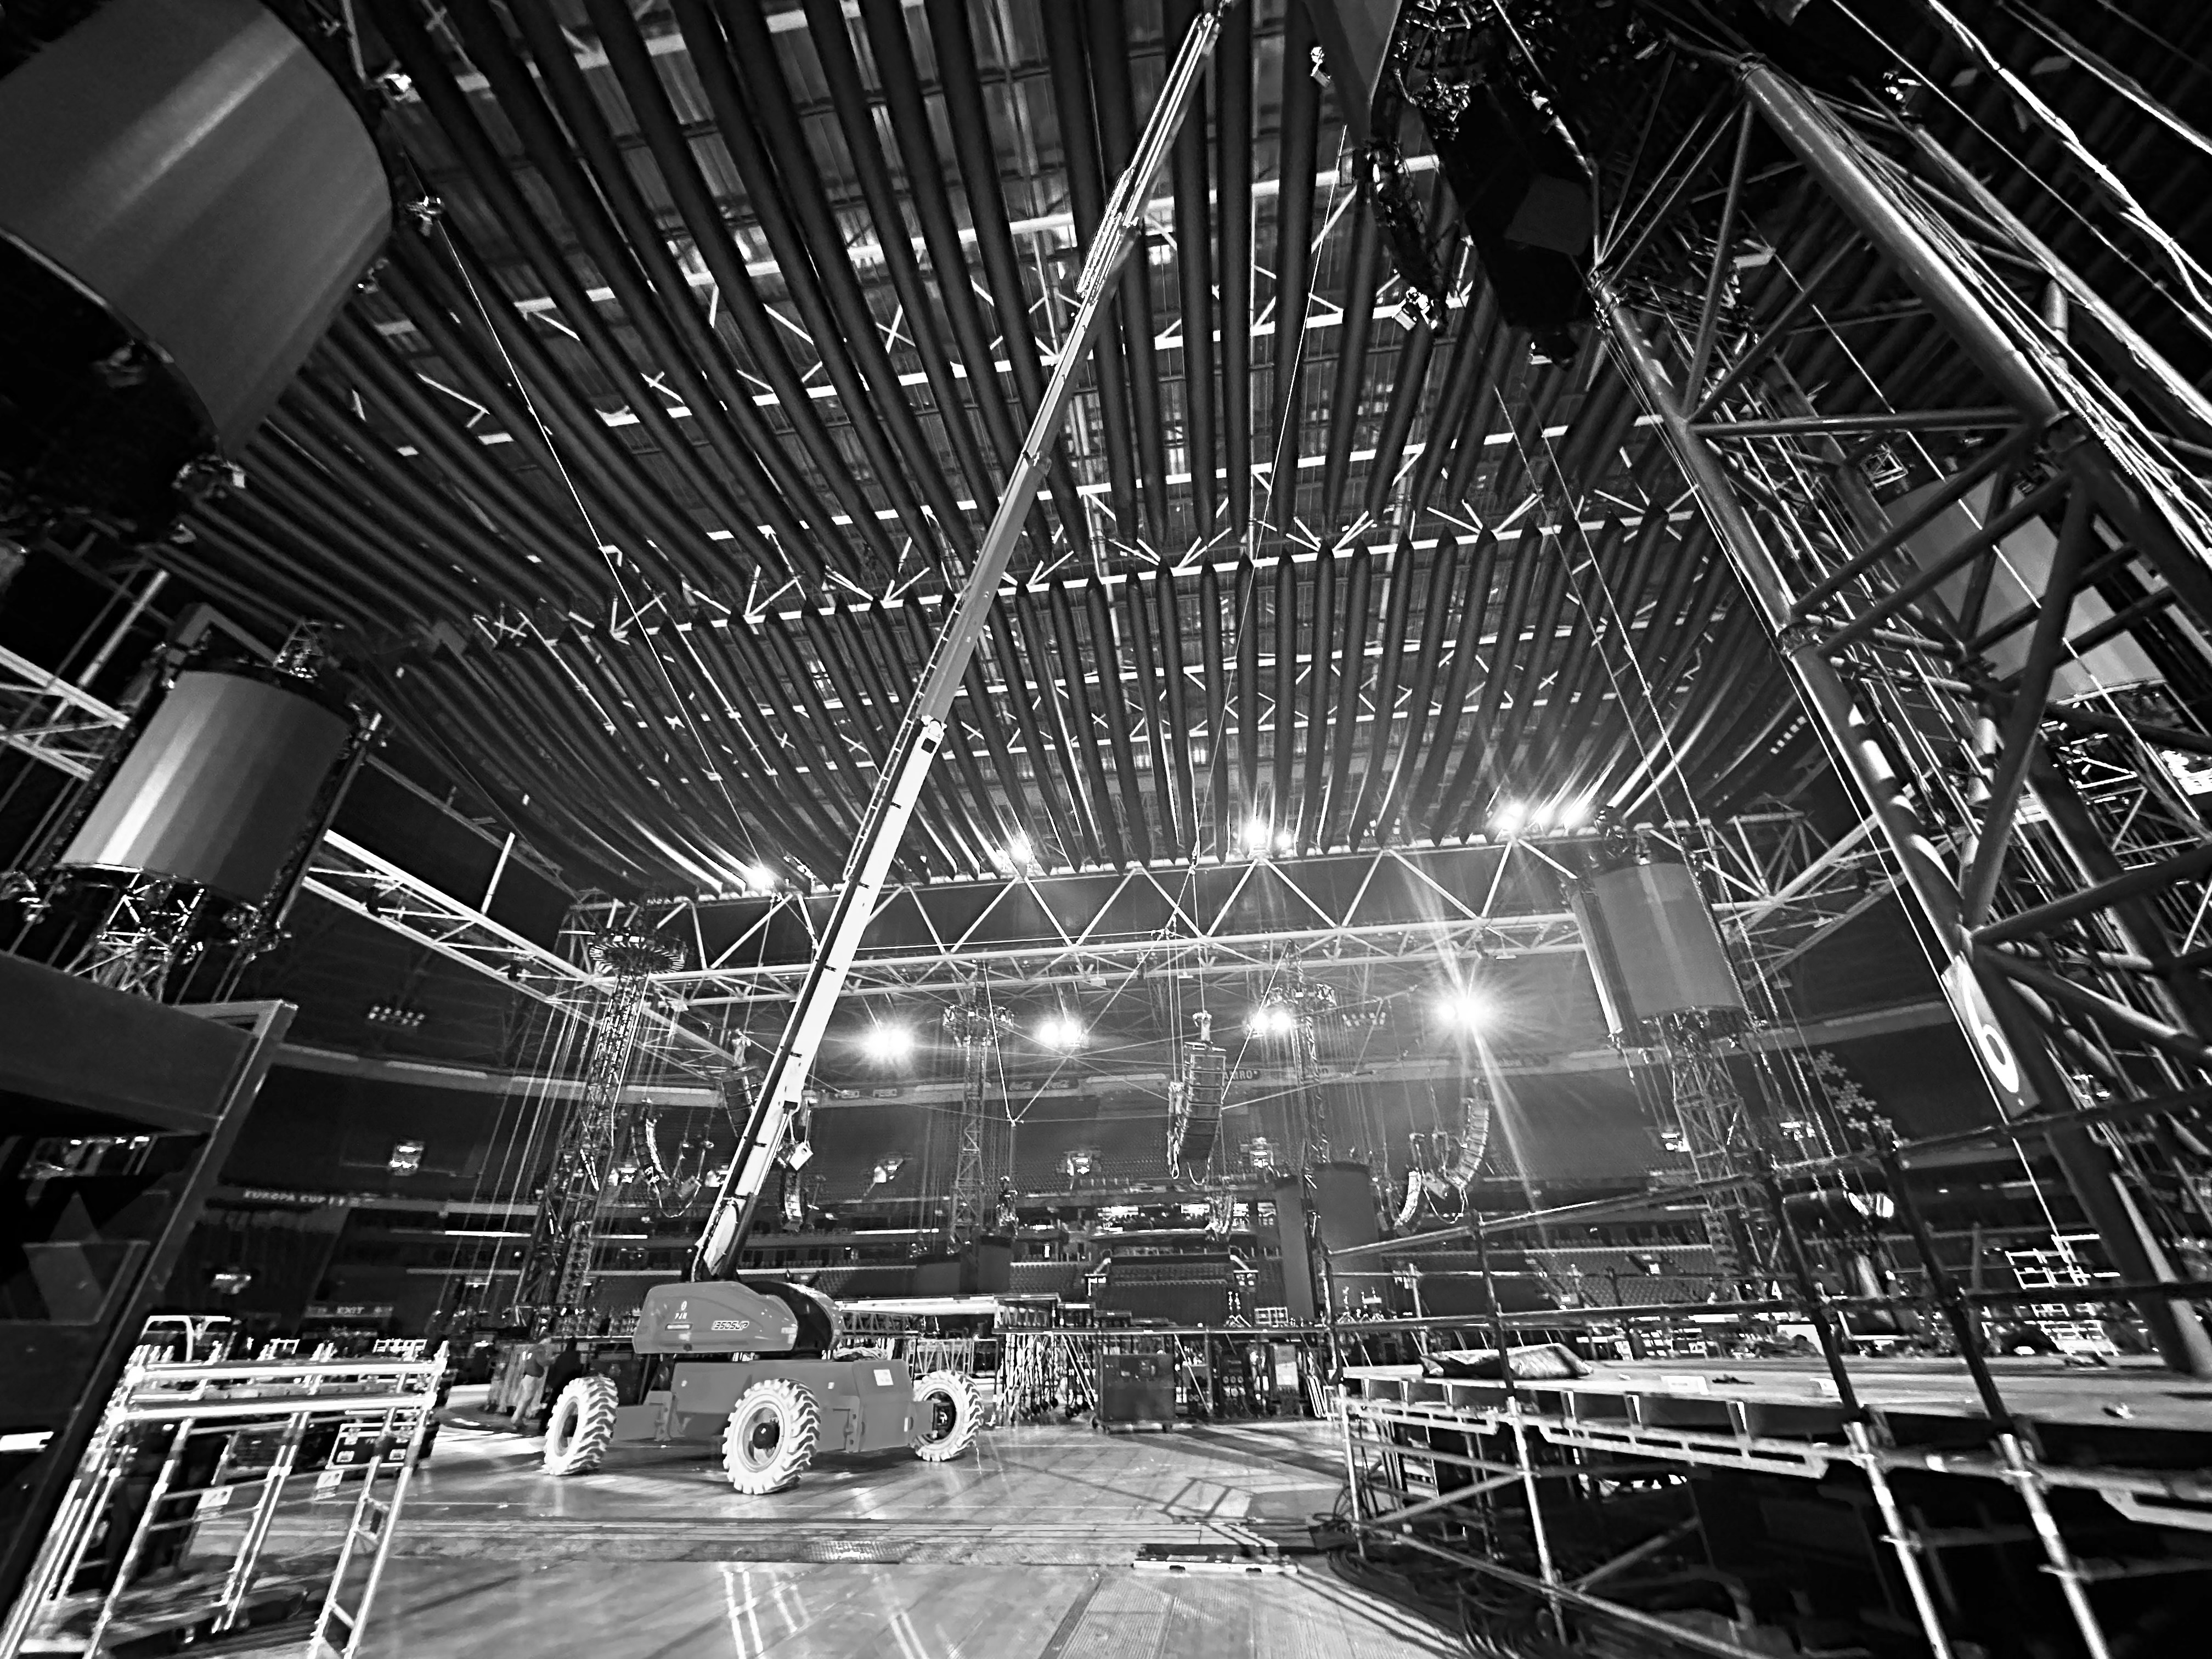 Metallica's Stage Under Construction